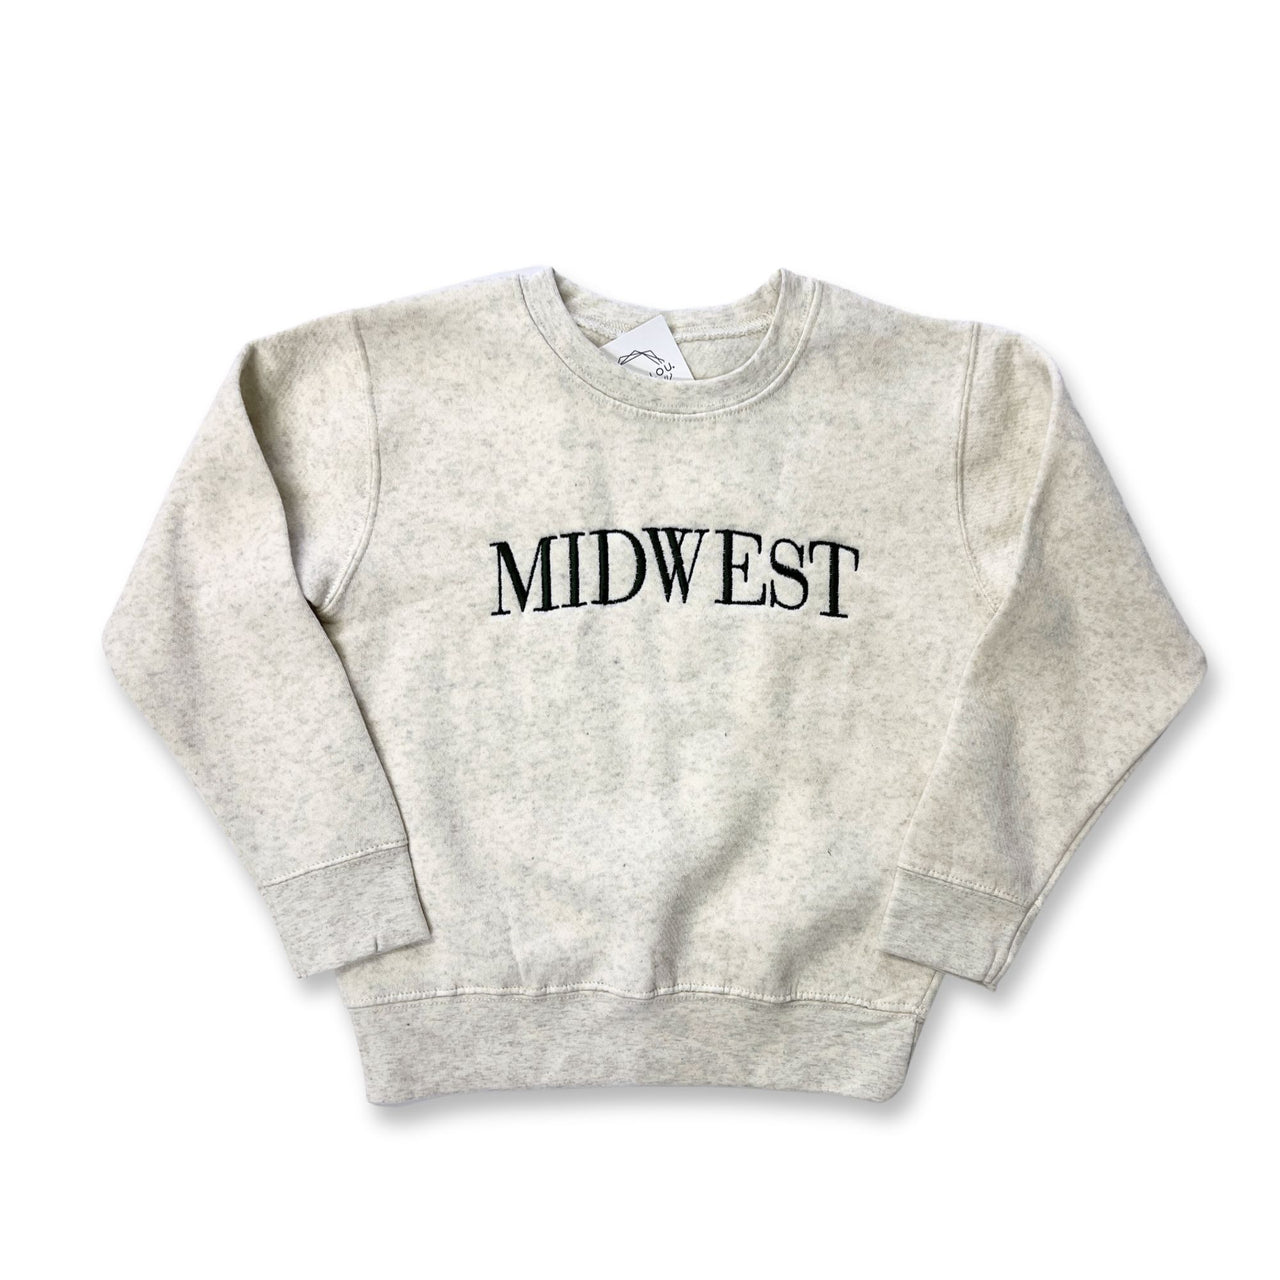 Midwest Kids Sweatshirt - Oat